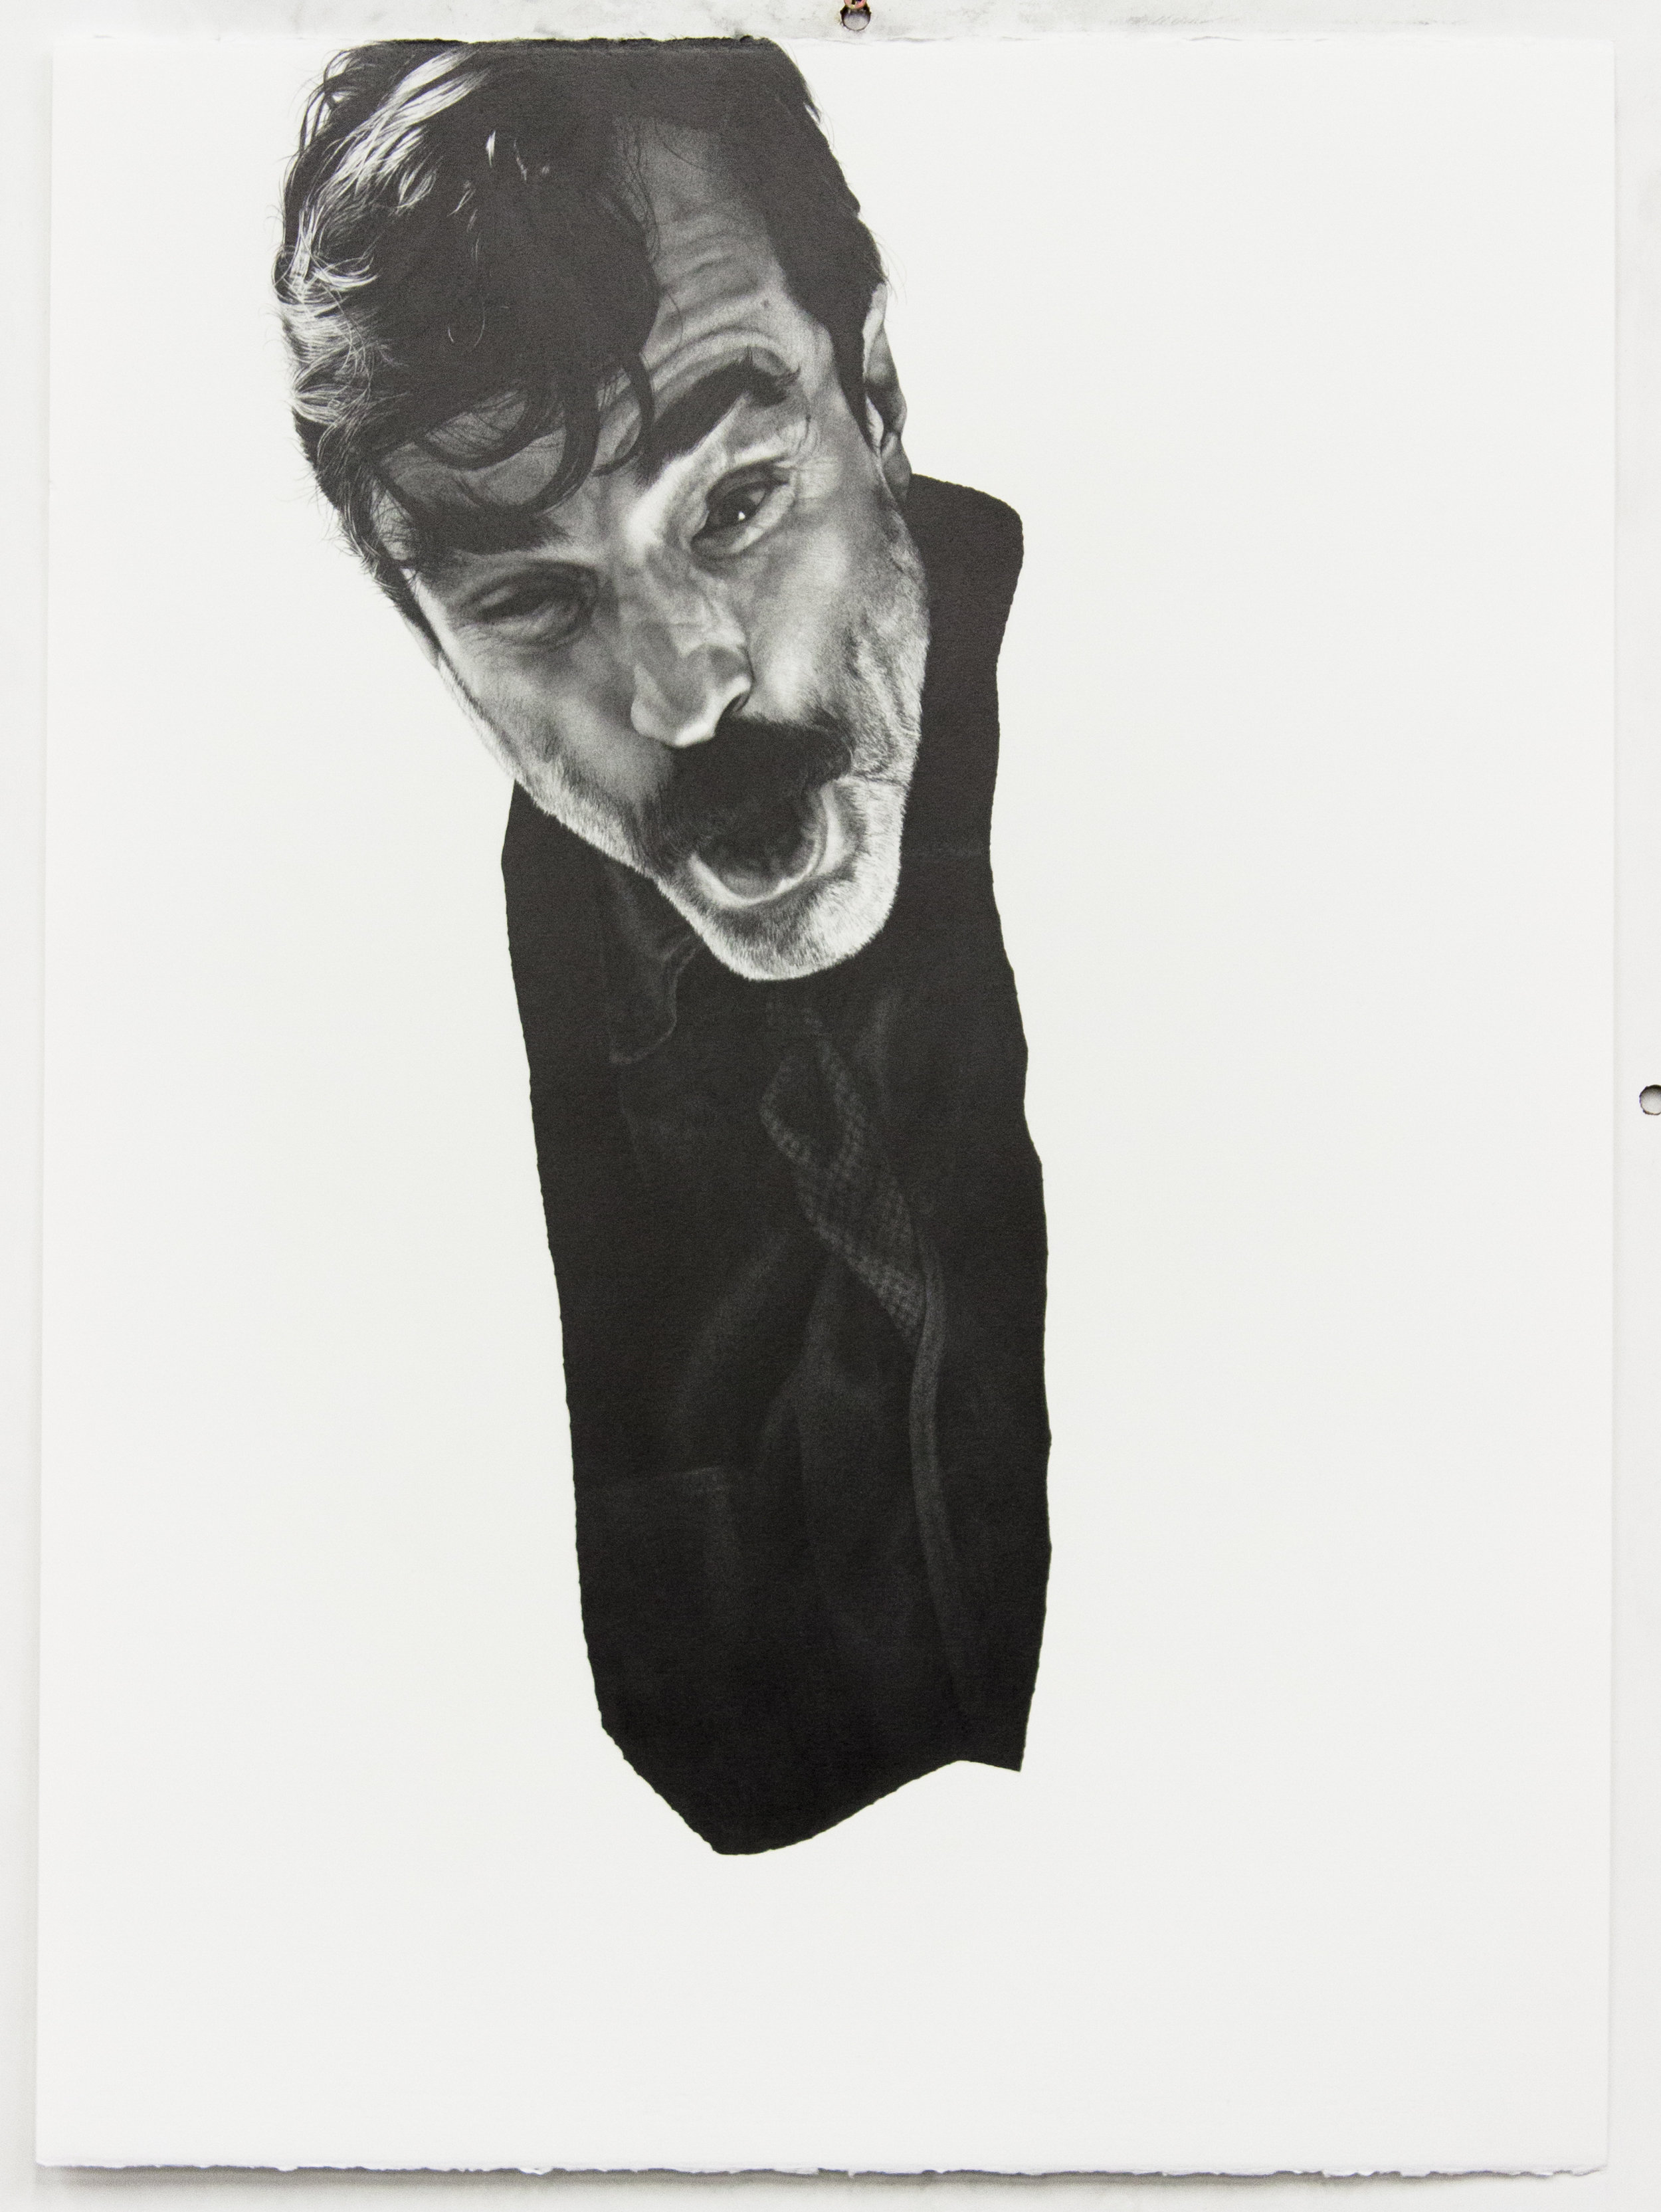  “post-human (Daniel Plainview)” graphite on paper, 56 x 76 cm, 2016. 